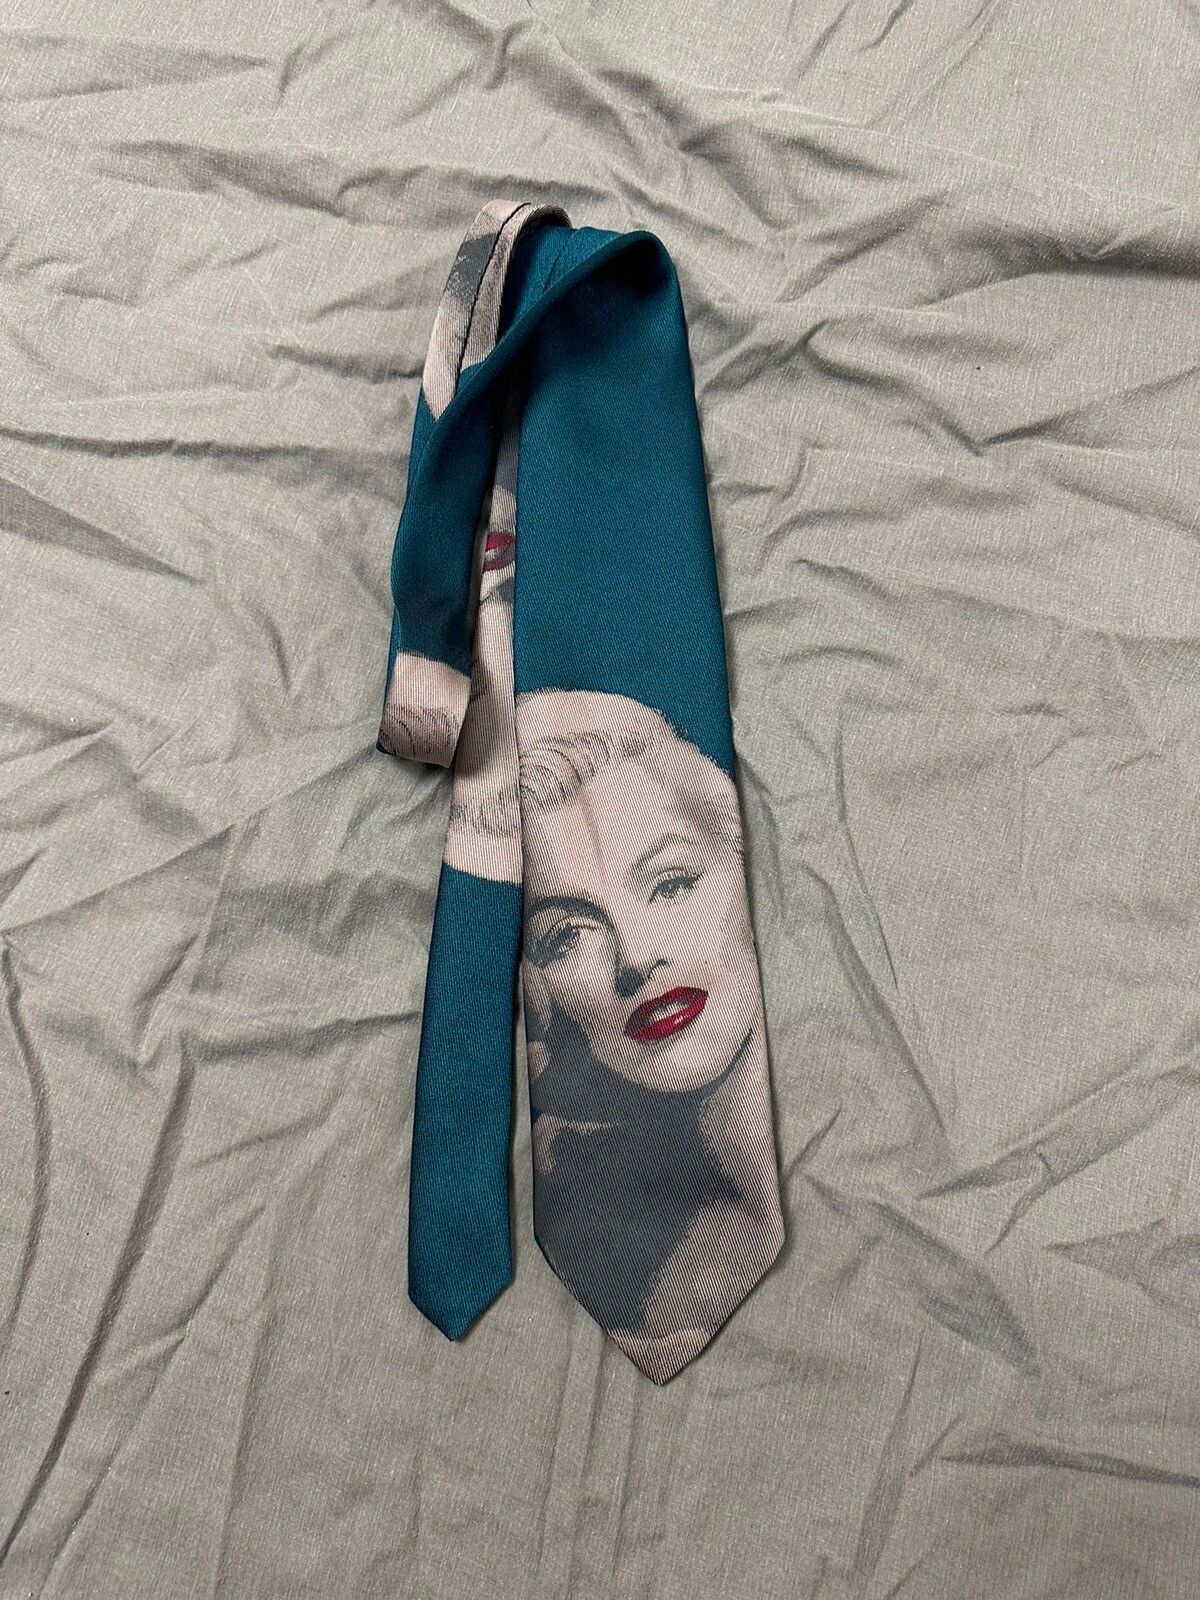 Pre-owned Vintage Marilyn Monroe Tie In Green